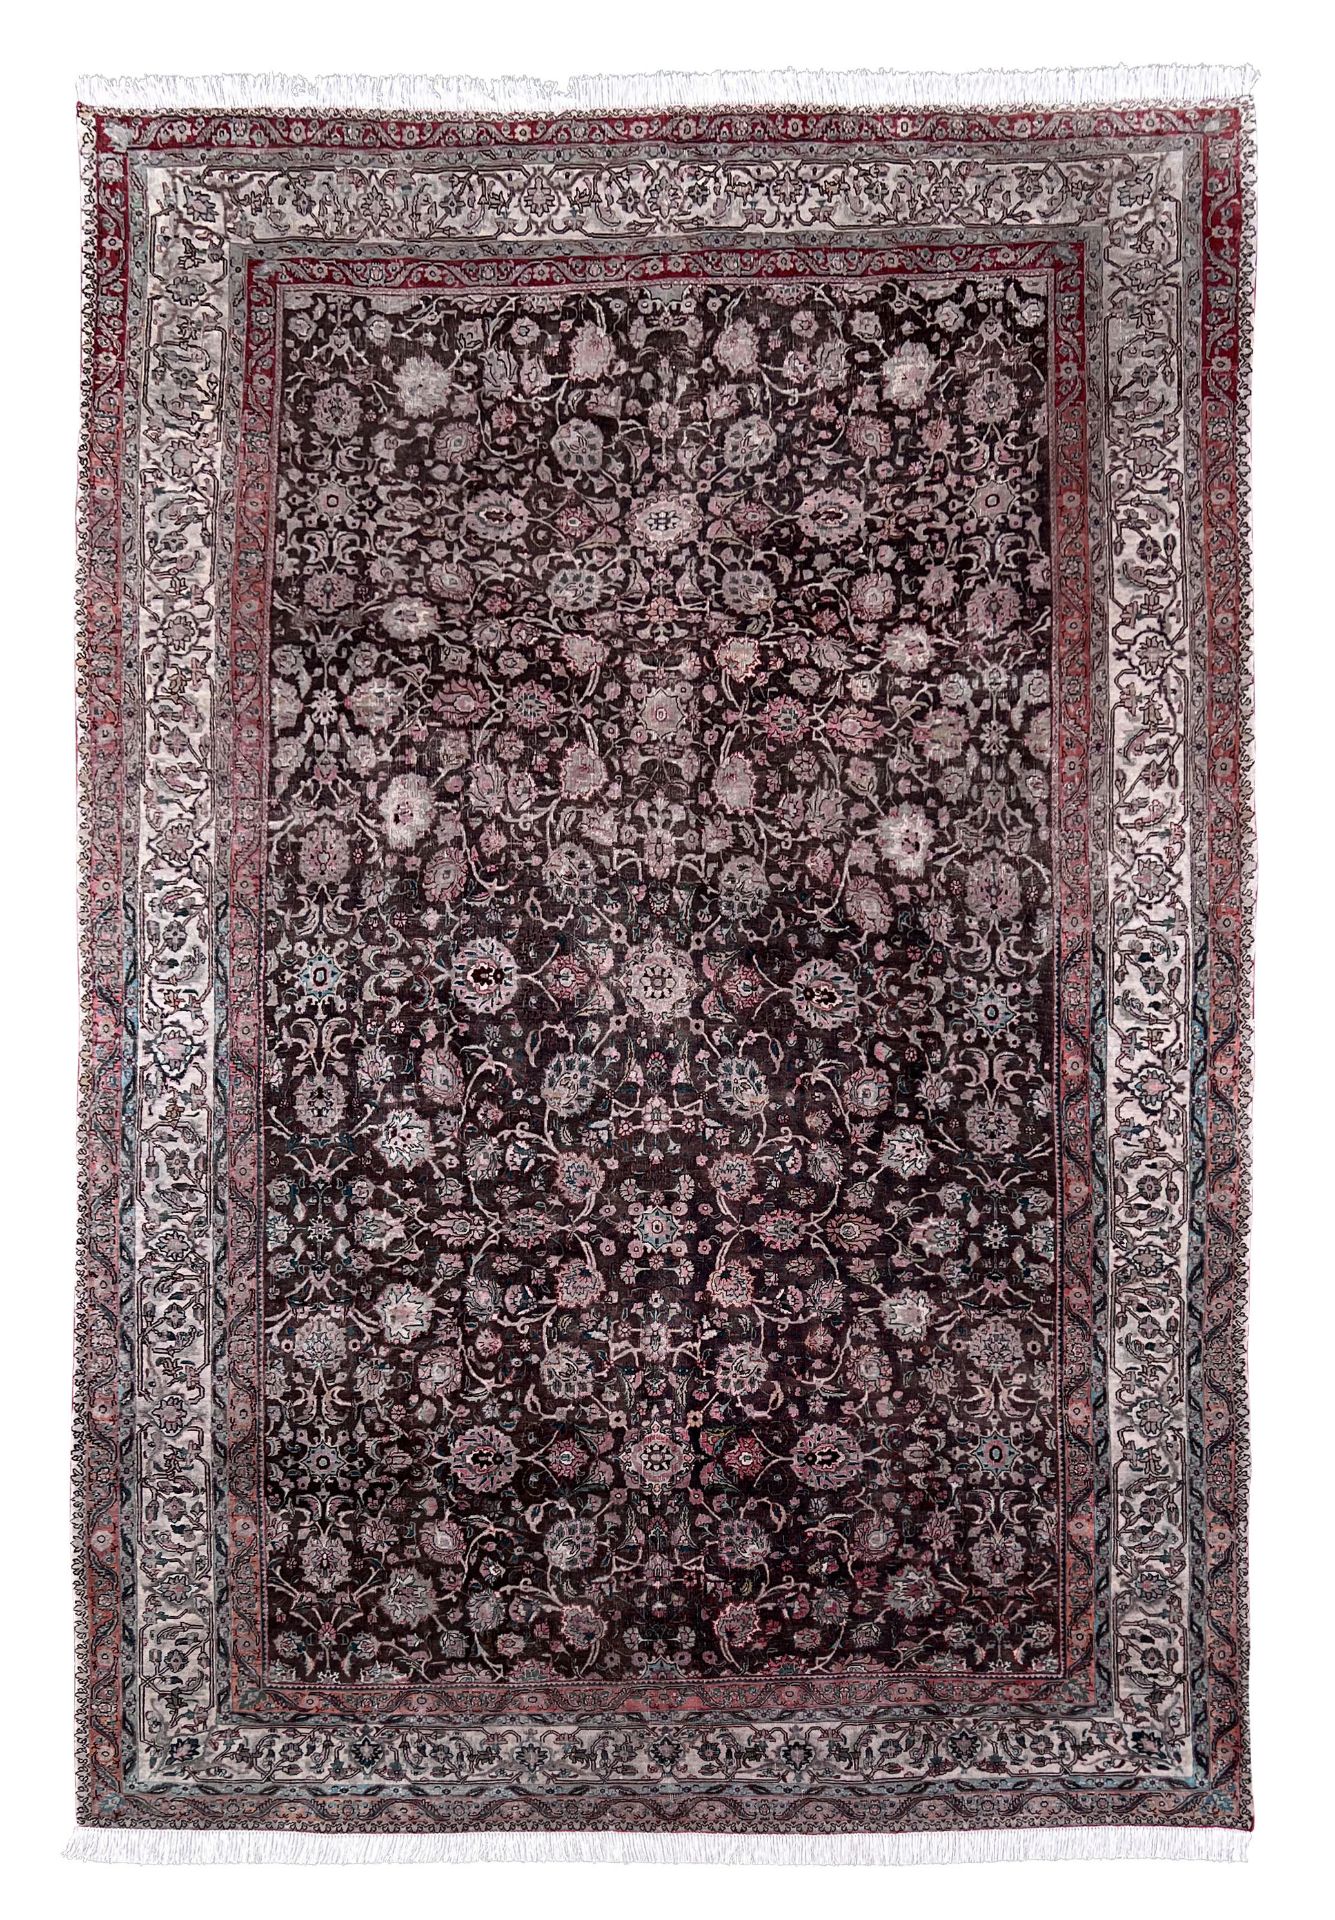 Decorative rug. Antique. Around 1900.